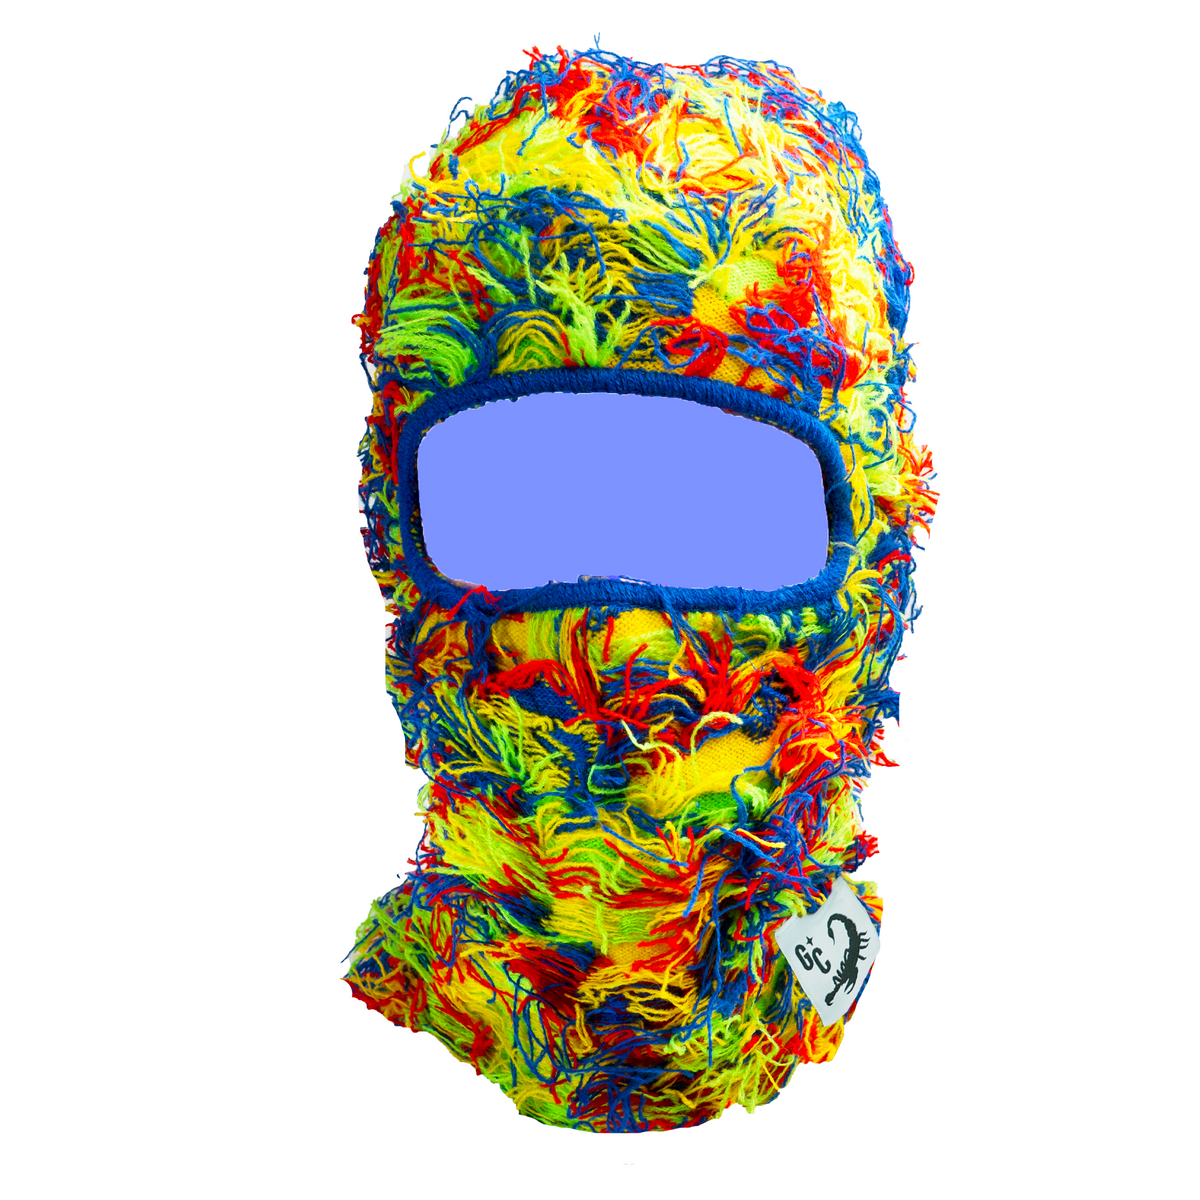 Distressed Premium 3.5oz Balaclava Ski mask